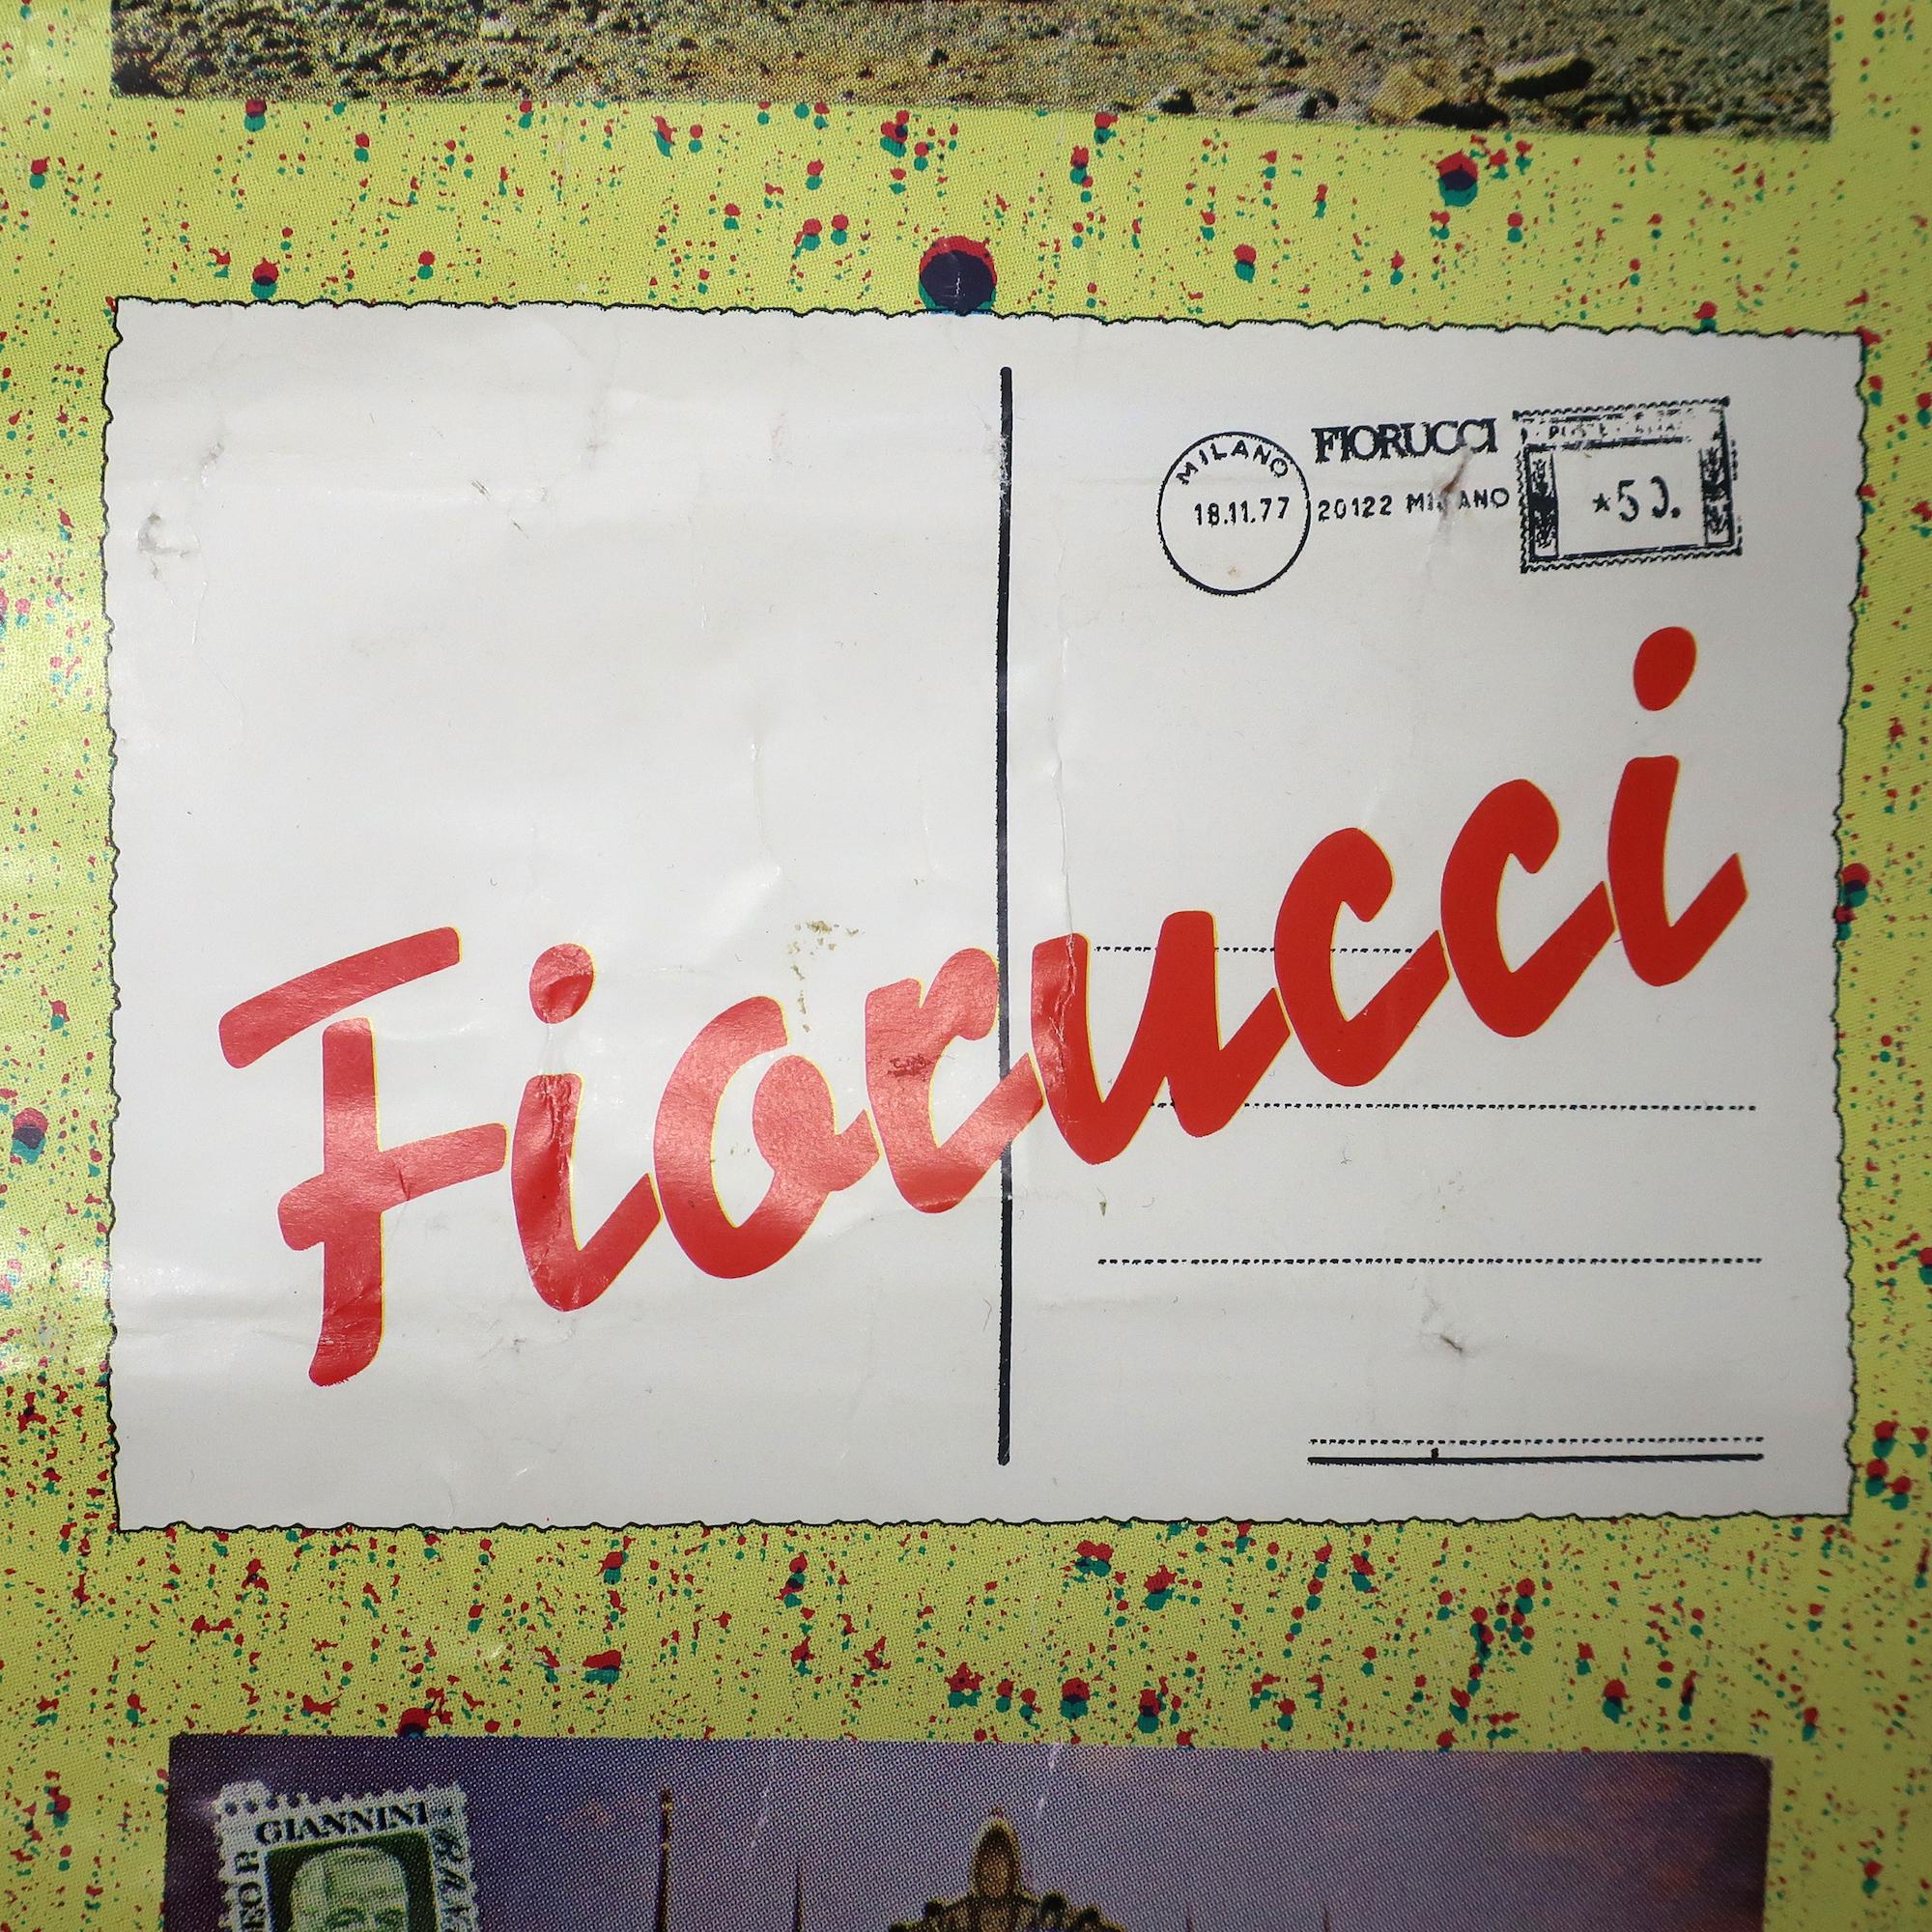 Ein altes und seltenes Fiorucci-Plakat mit Postkarten aus aller Welt in einer Collage, die sowohl Sehenswürdigkeiten aus aller Welt als auch schöne Frauen in verschiedenen Zuständen der Entkleidung zeigt - plus Königin Elisabeth, die eine Dose